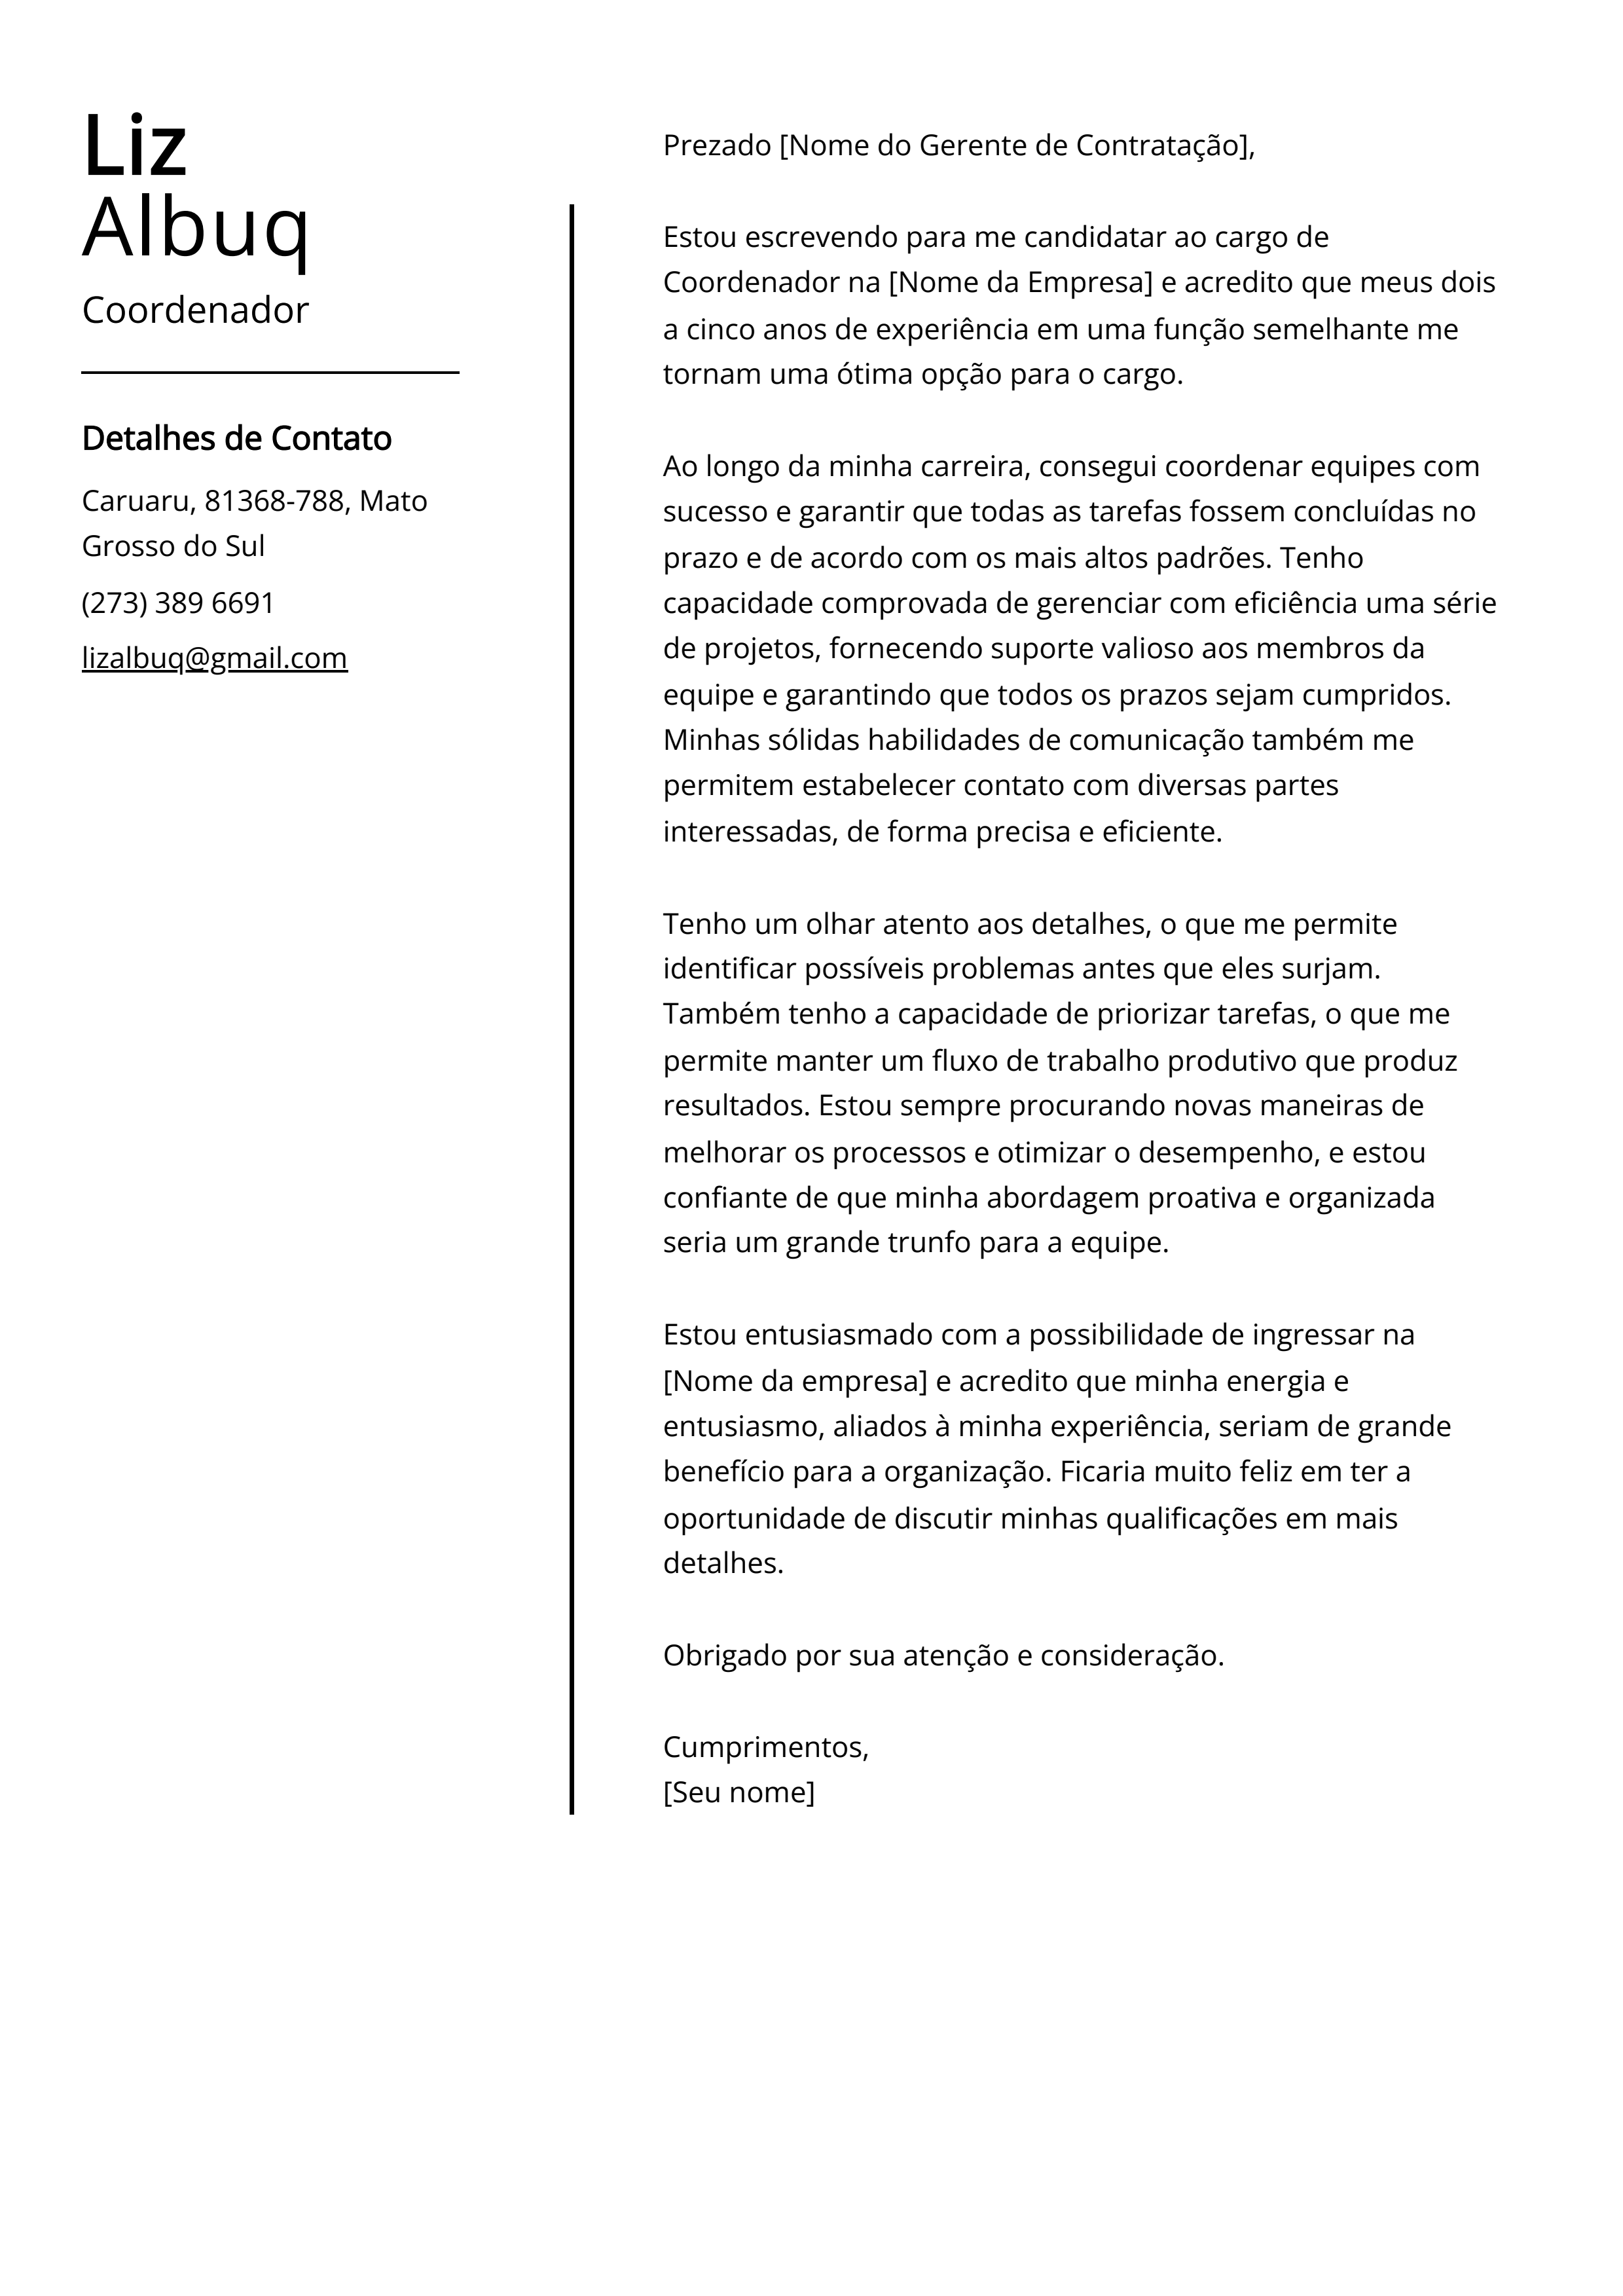 Exemplo de carta de apresentação do coordenador